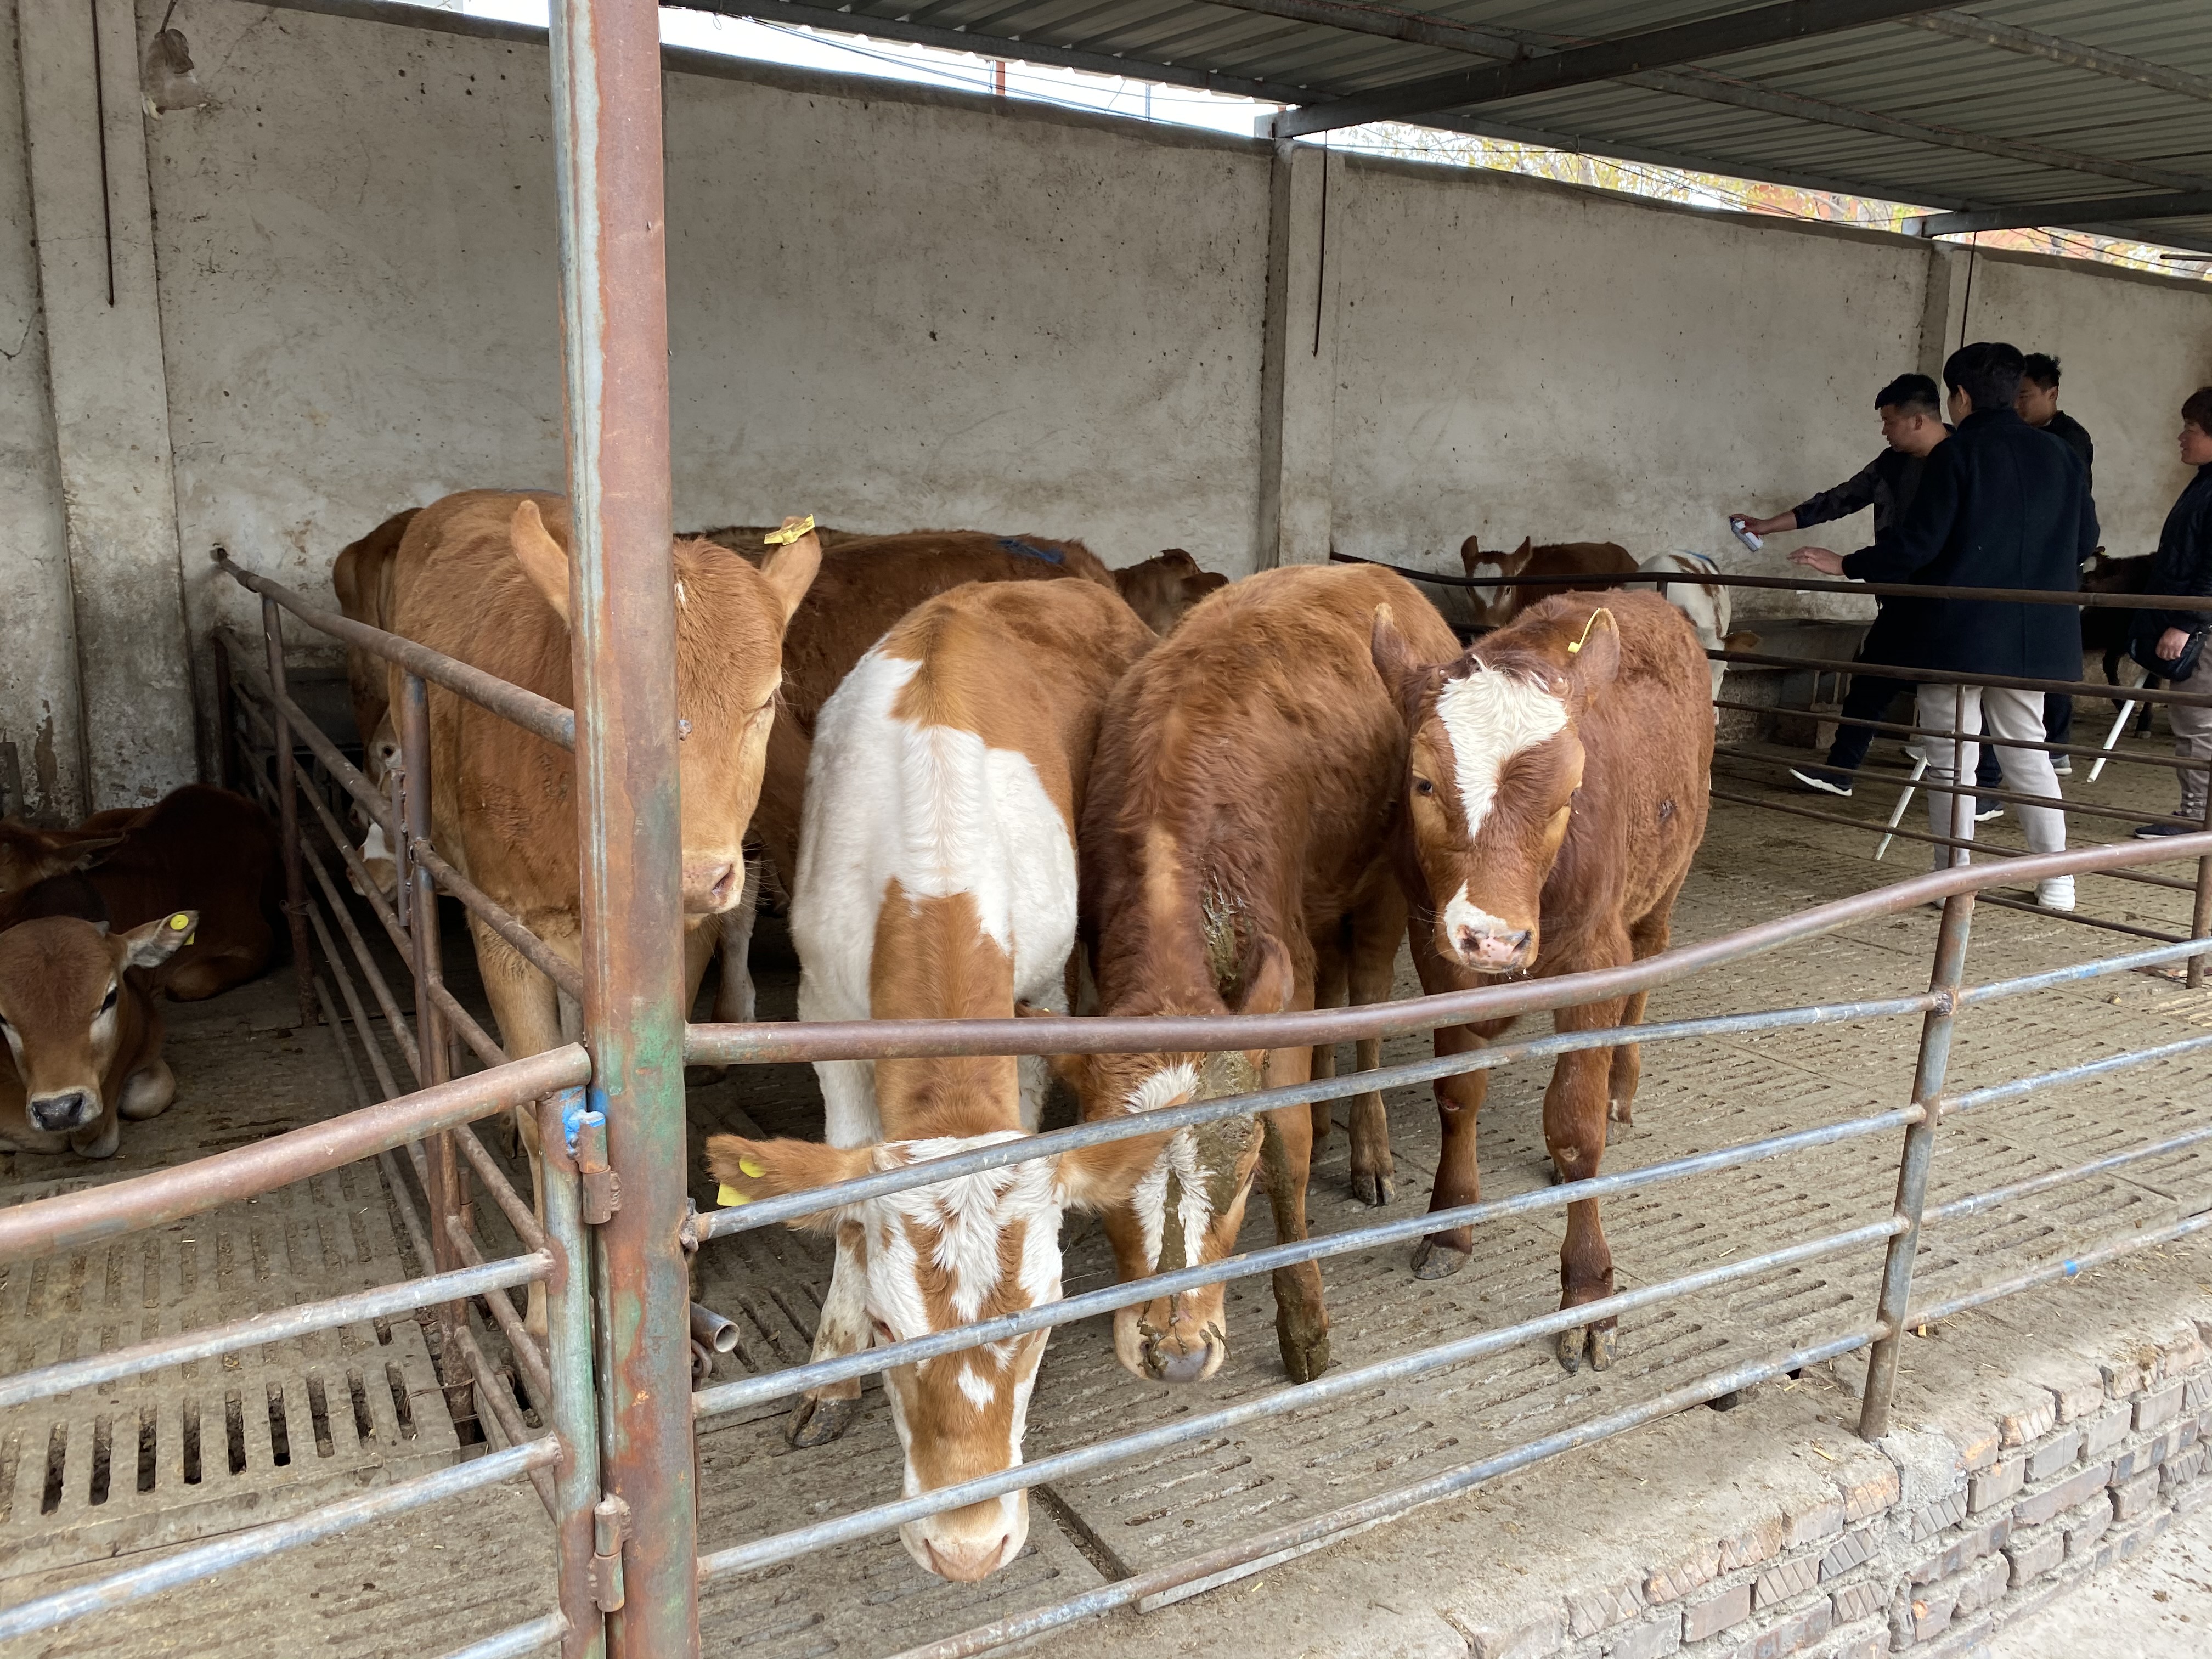 夏洛莱牛 鲁西黄牛 湖南欣旺达肉牛养殖场常年对外出售优良肉牛肉牛犊 西门塔尔牛 利木赞牛7